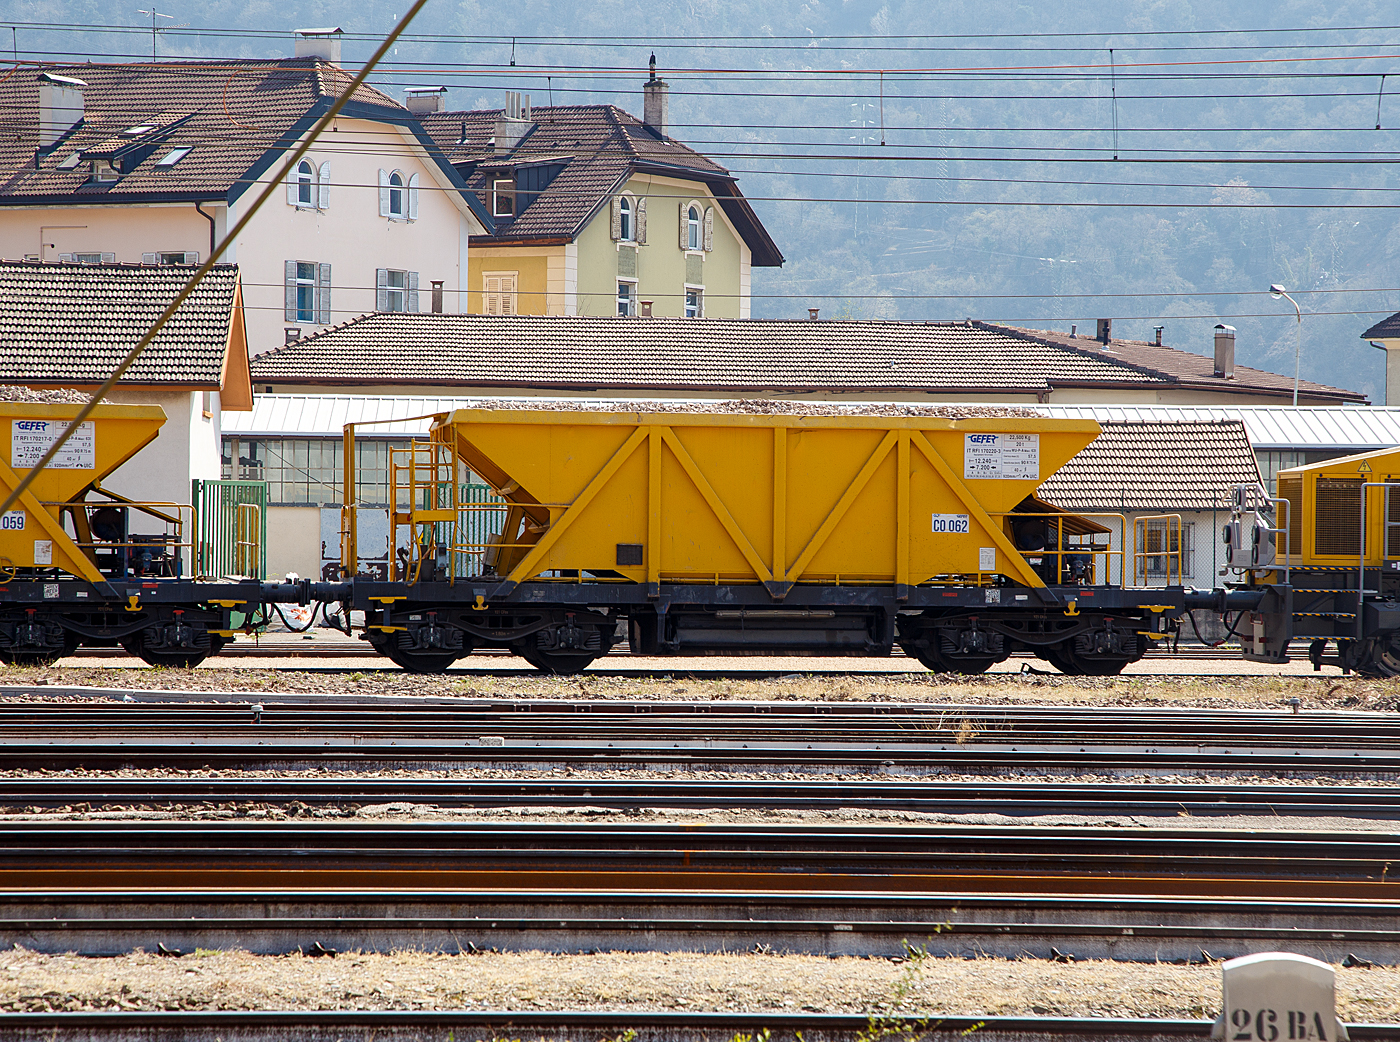 Vierachsiger Drehgestell 40m³ Schotterwagen (IT RFI 170 220-3) der Italienischen Firma Gefer S.p.A. (zu GCF) am 26.03.2022 beim Bahnhof Bozen (Stazione di Bolzano).